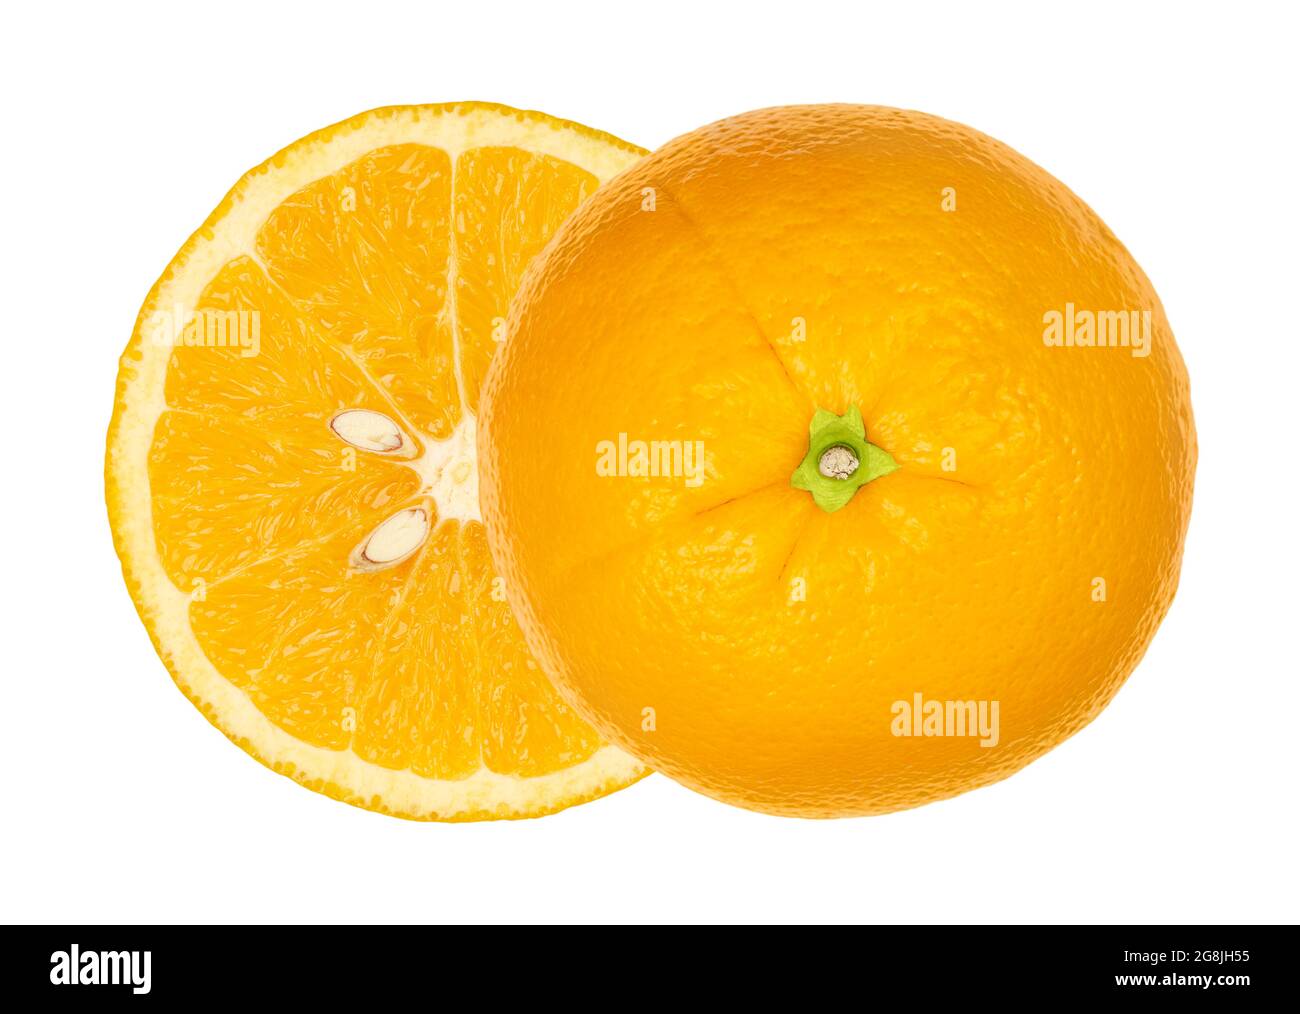 Due metà arancioni, dall'alto, isolate su bianco. Arancio fresco maturo tagliato a metà, entrambe le metà sfalsate lateralmente, con sezione trasversale. Foto Stock